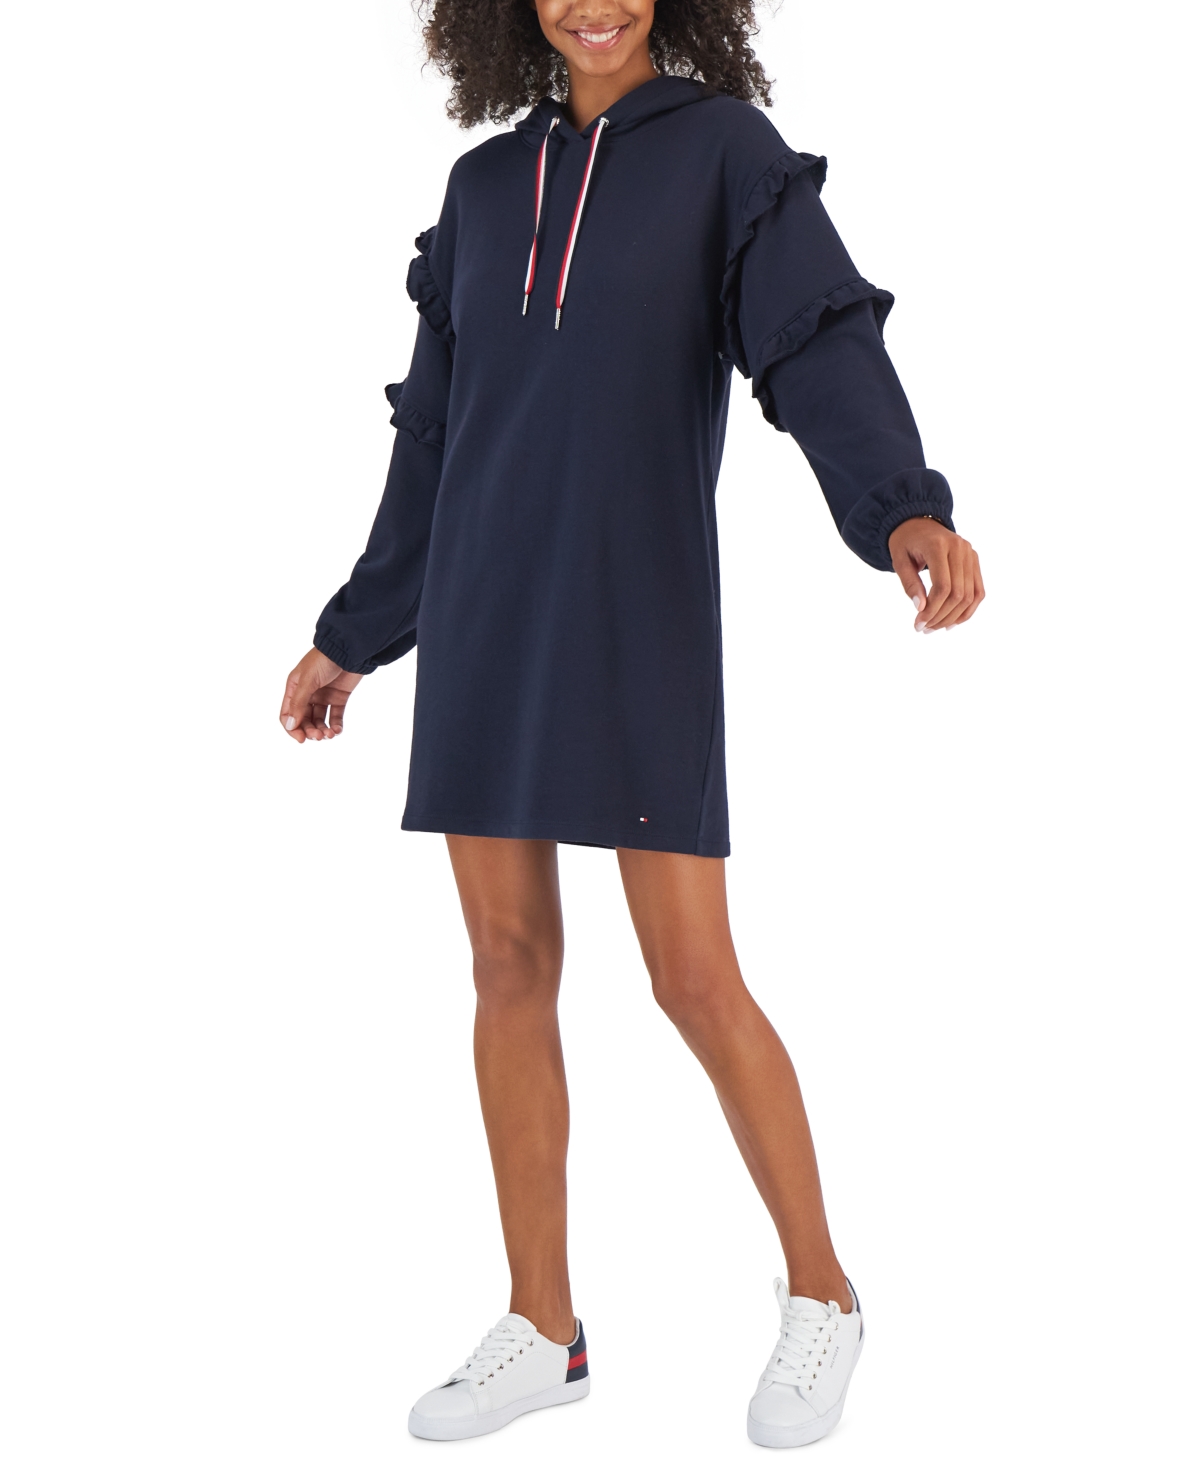 Tommy Hilfiger Women's Ruffle Sleeve Sweatshirt Dress